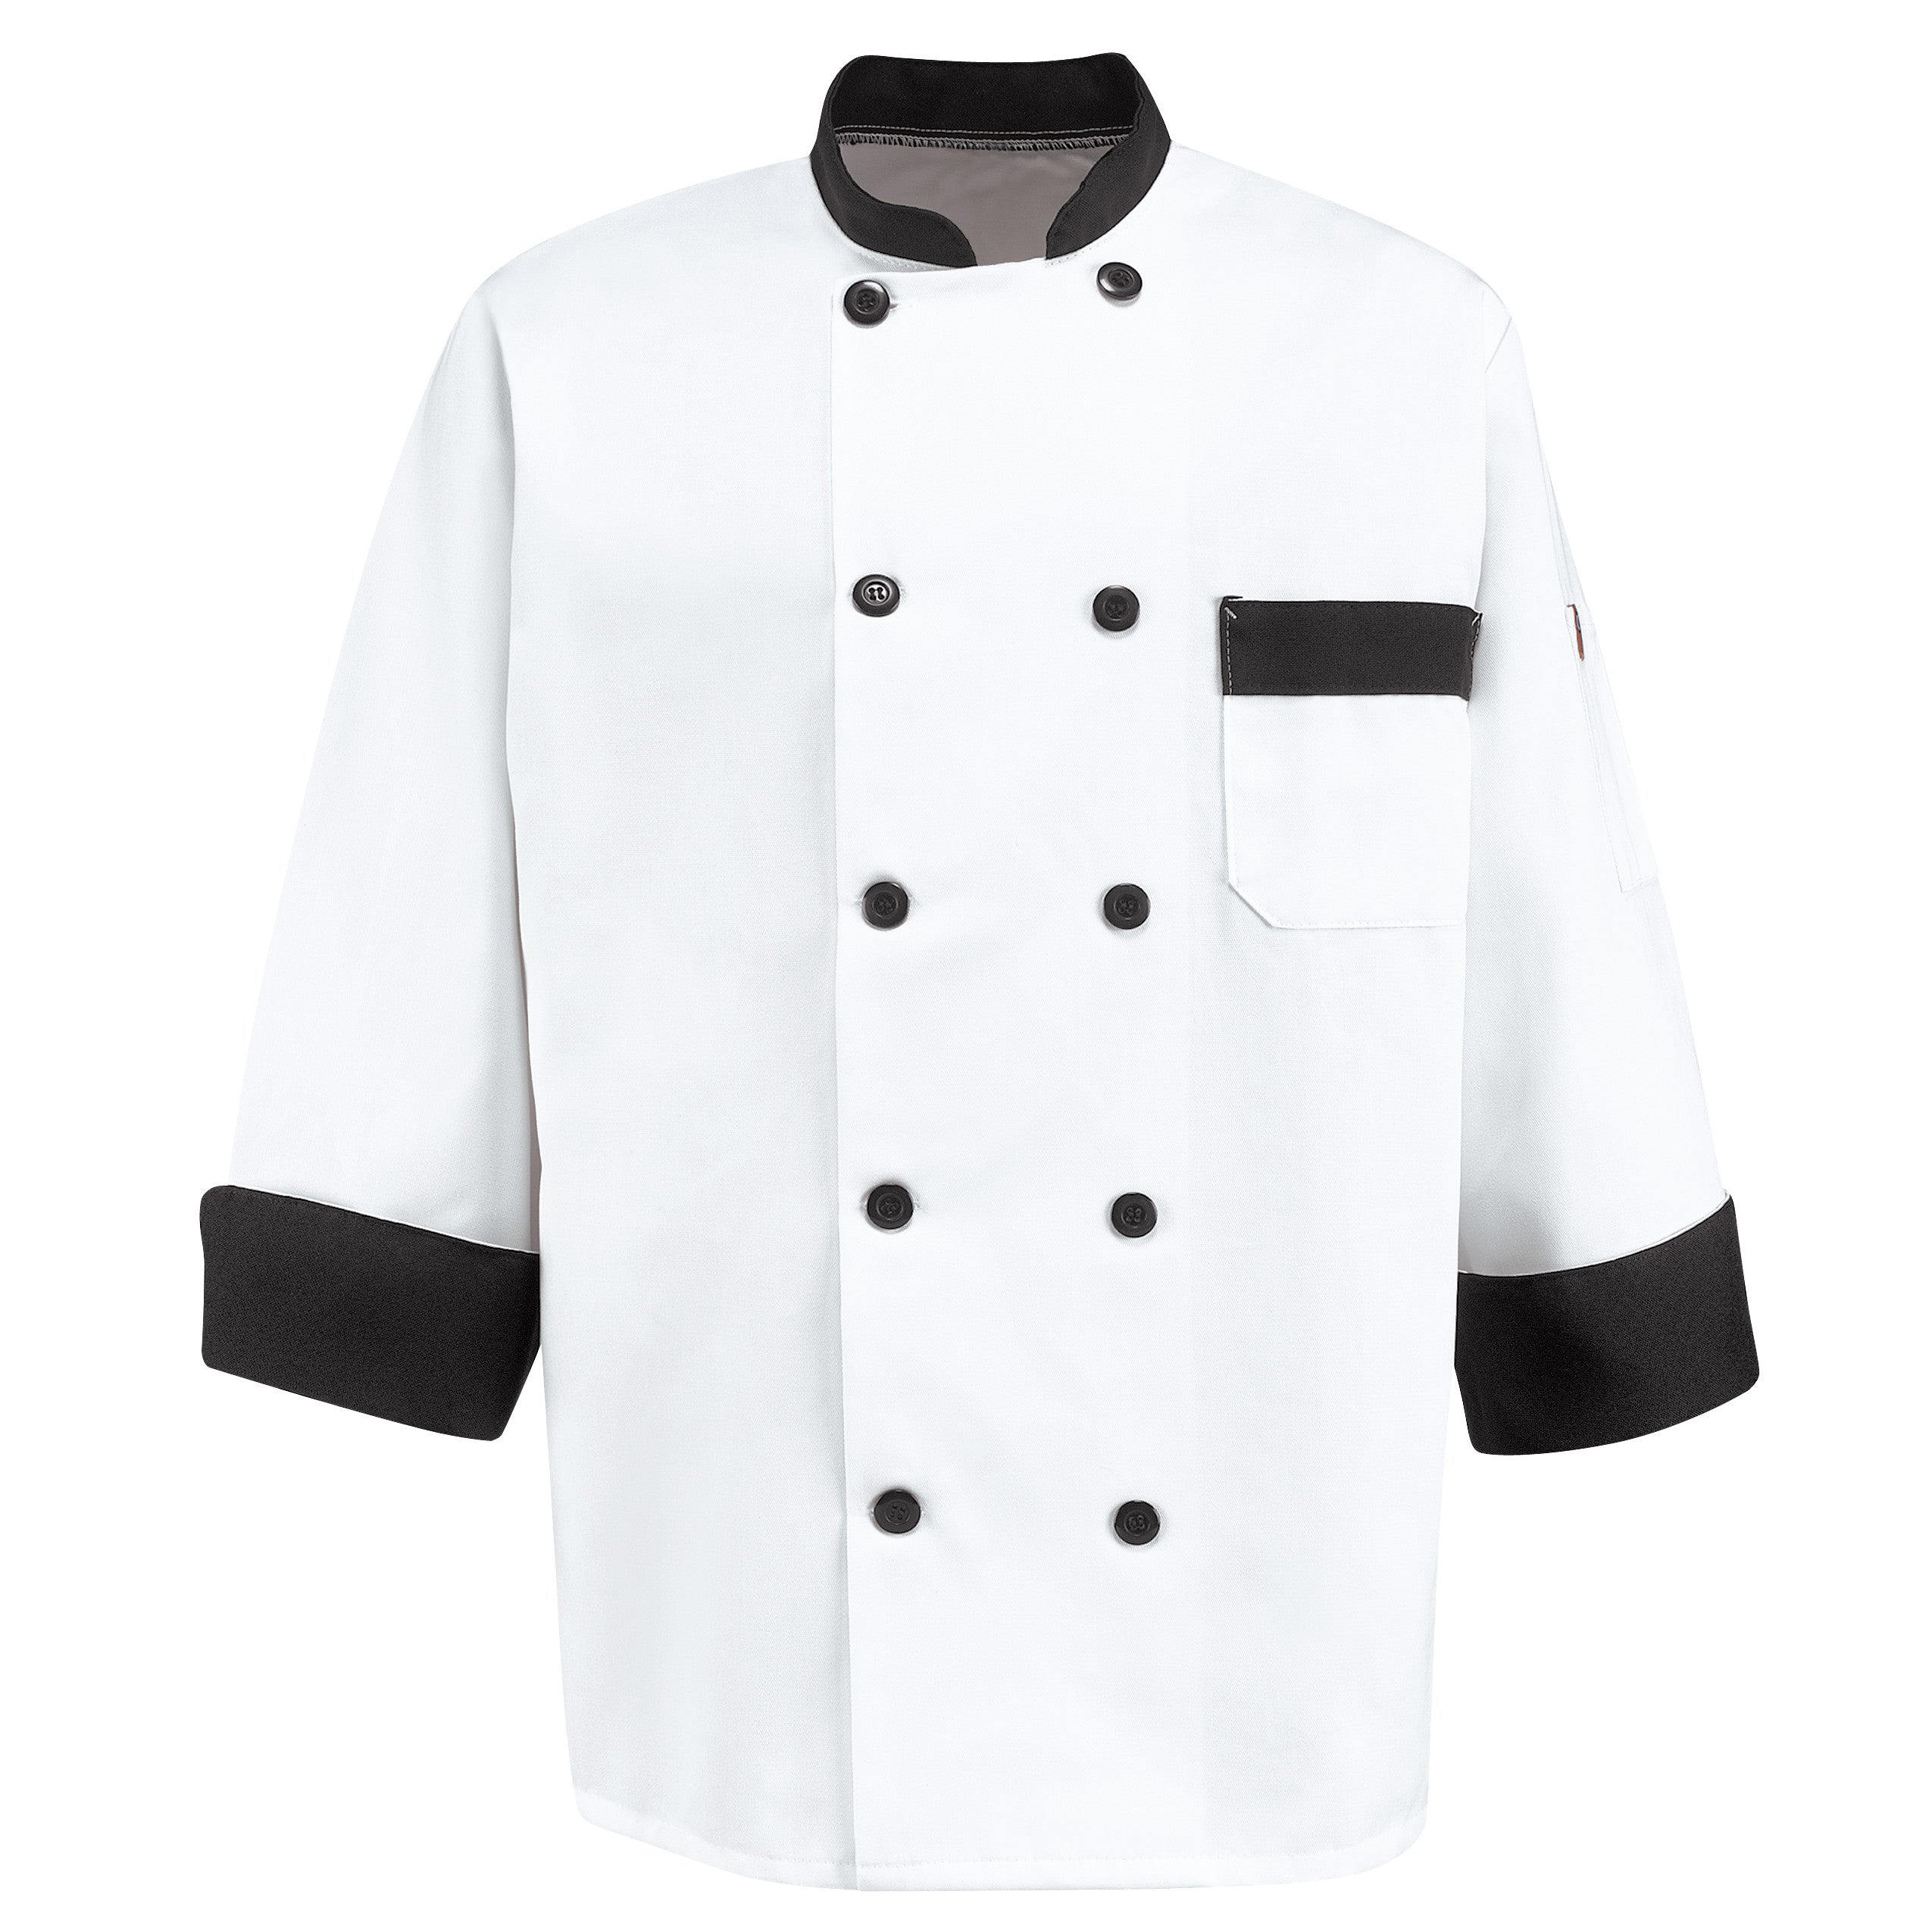 Garnish Chef Coat KT74 - White/BlackTrim-eSafety Supplies, Inc